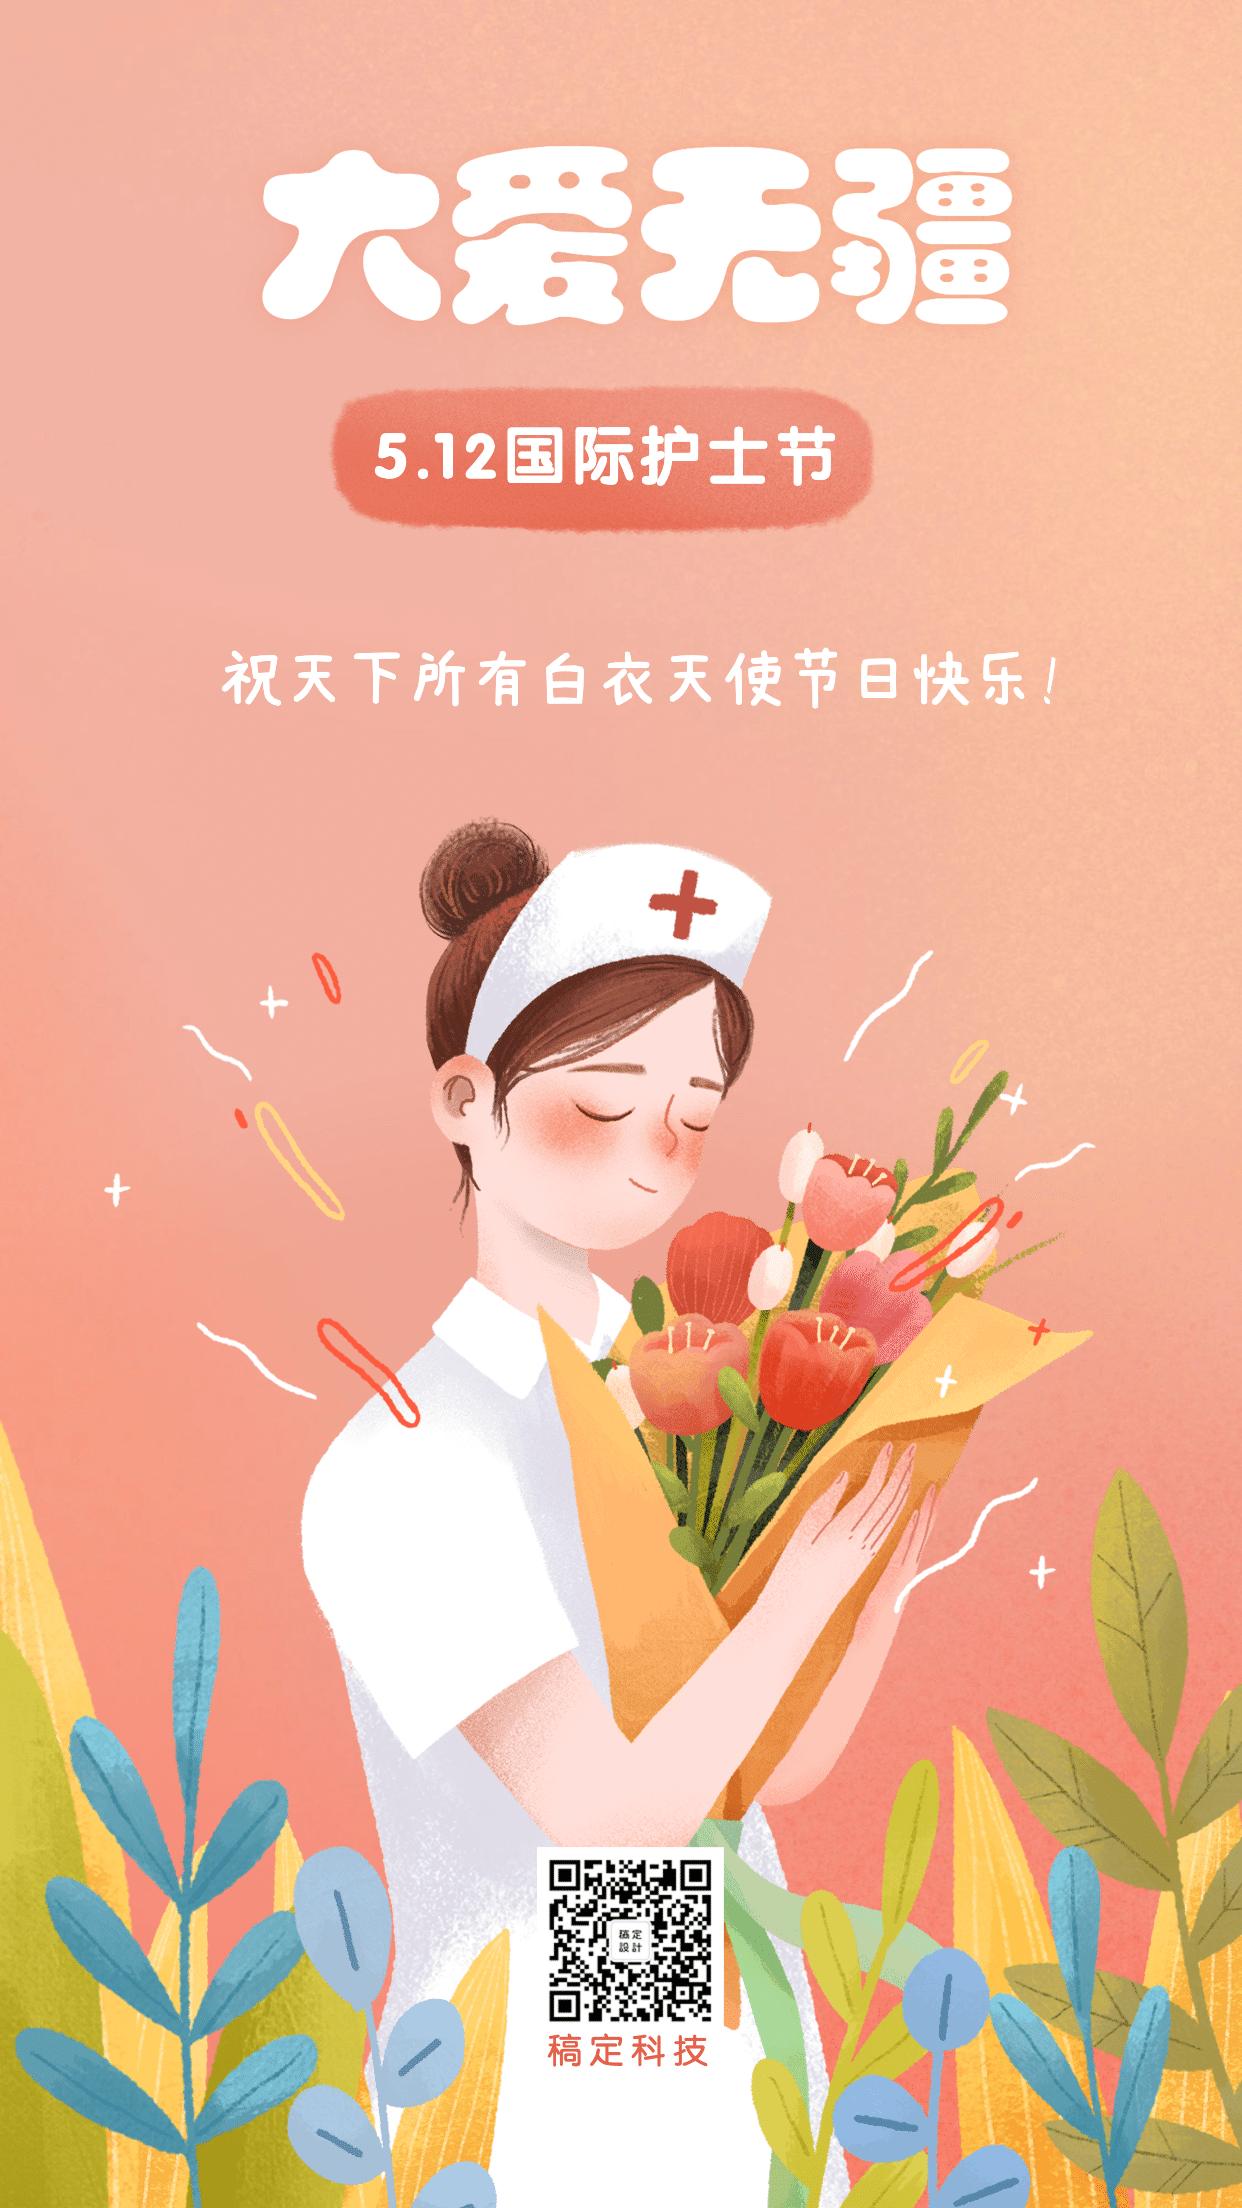 国际护士节祝福问候插画手机海报预览效果